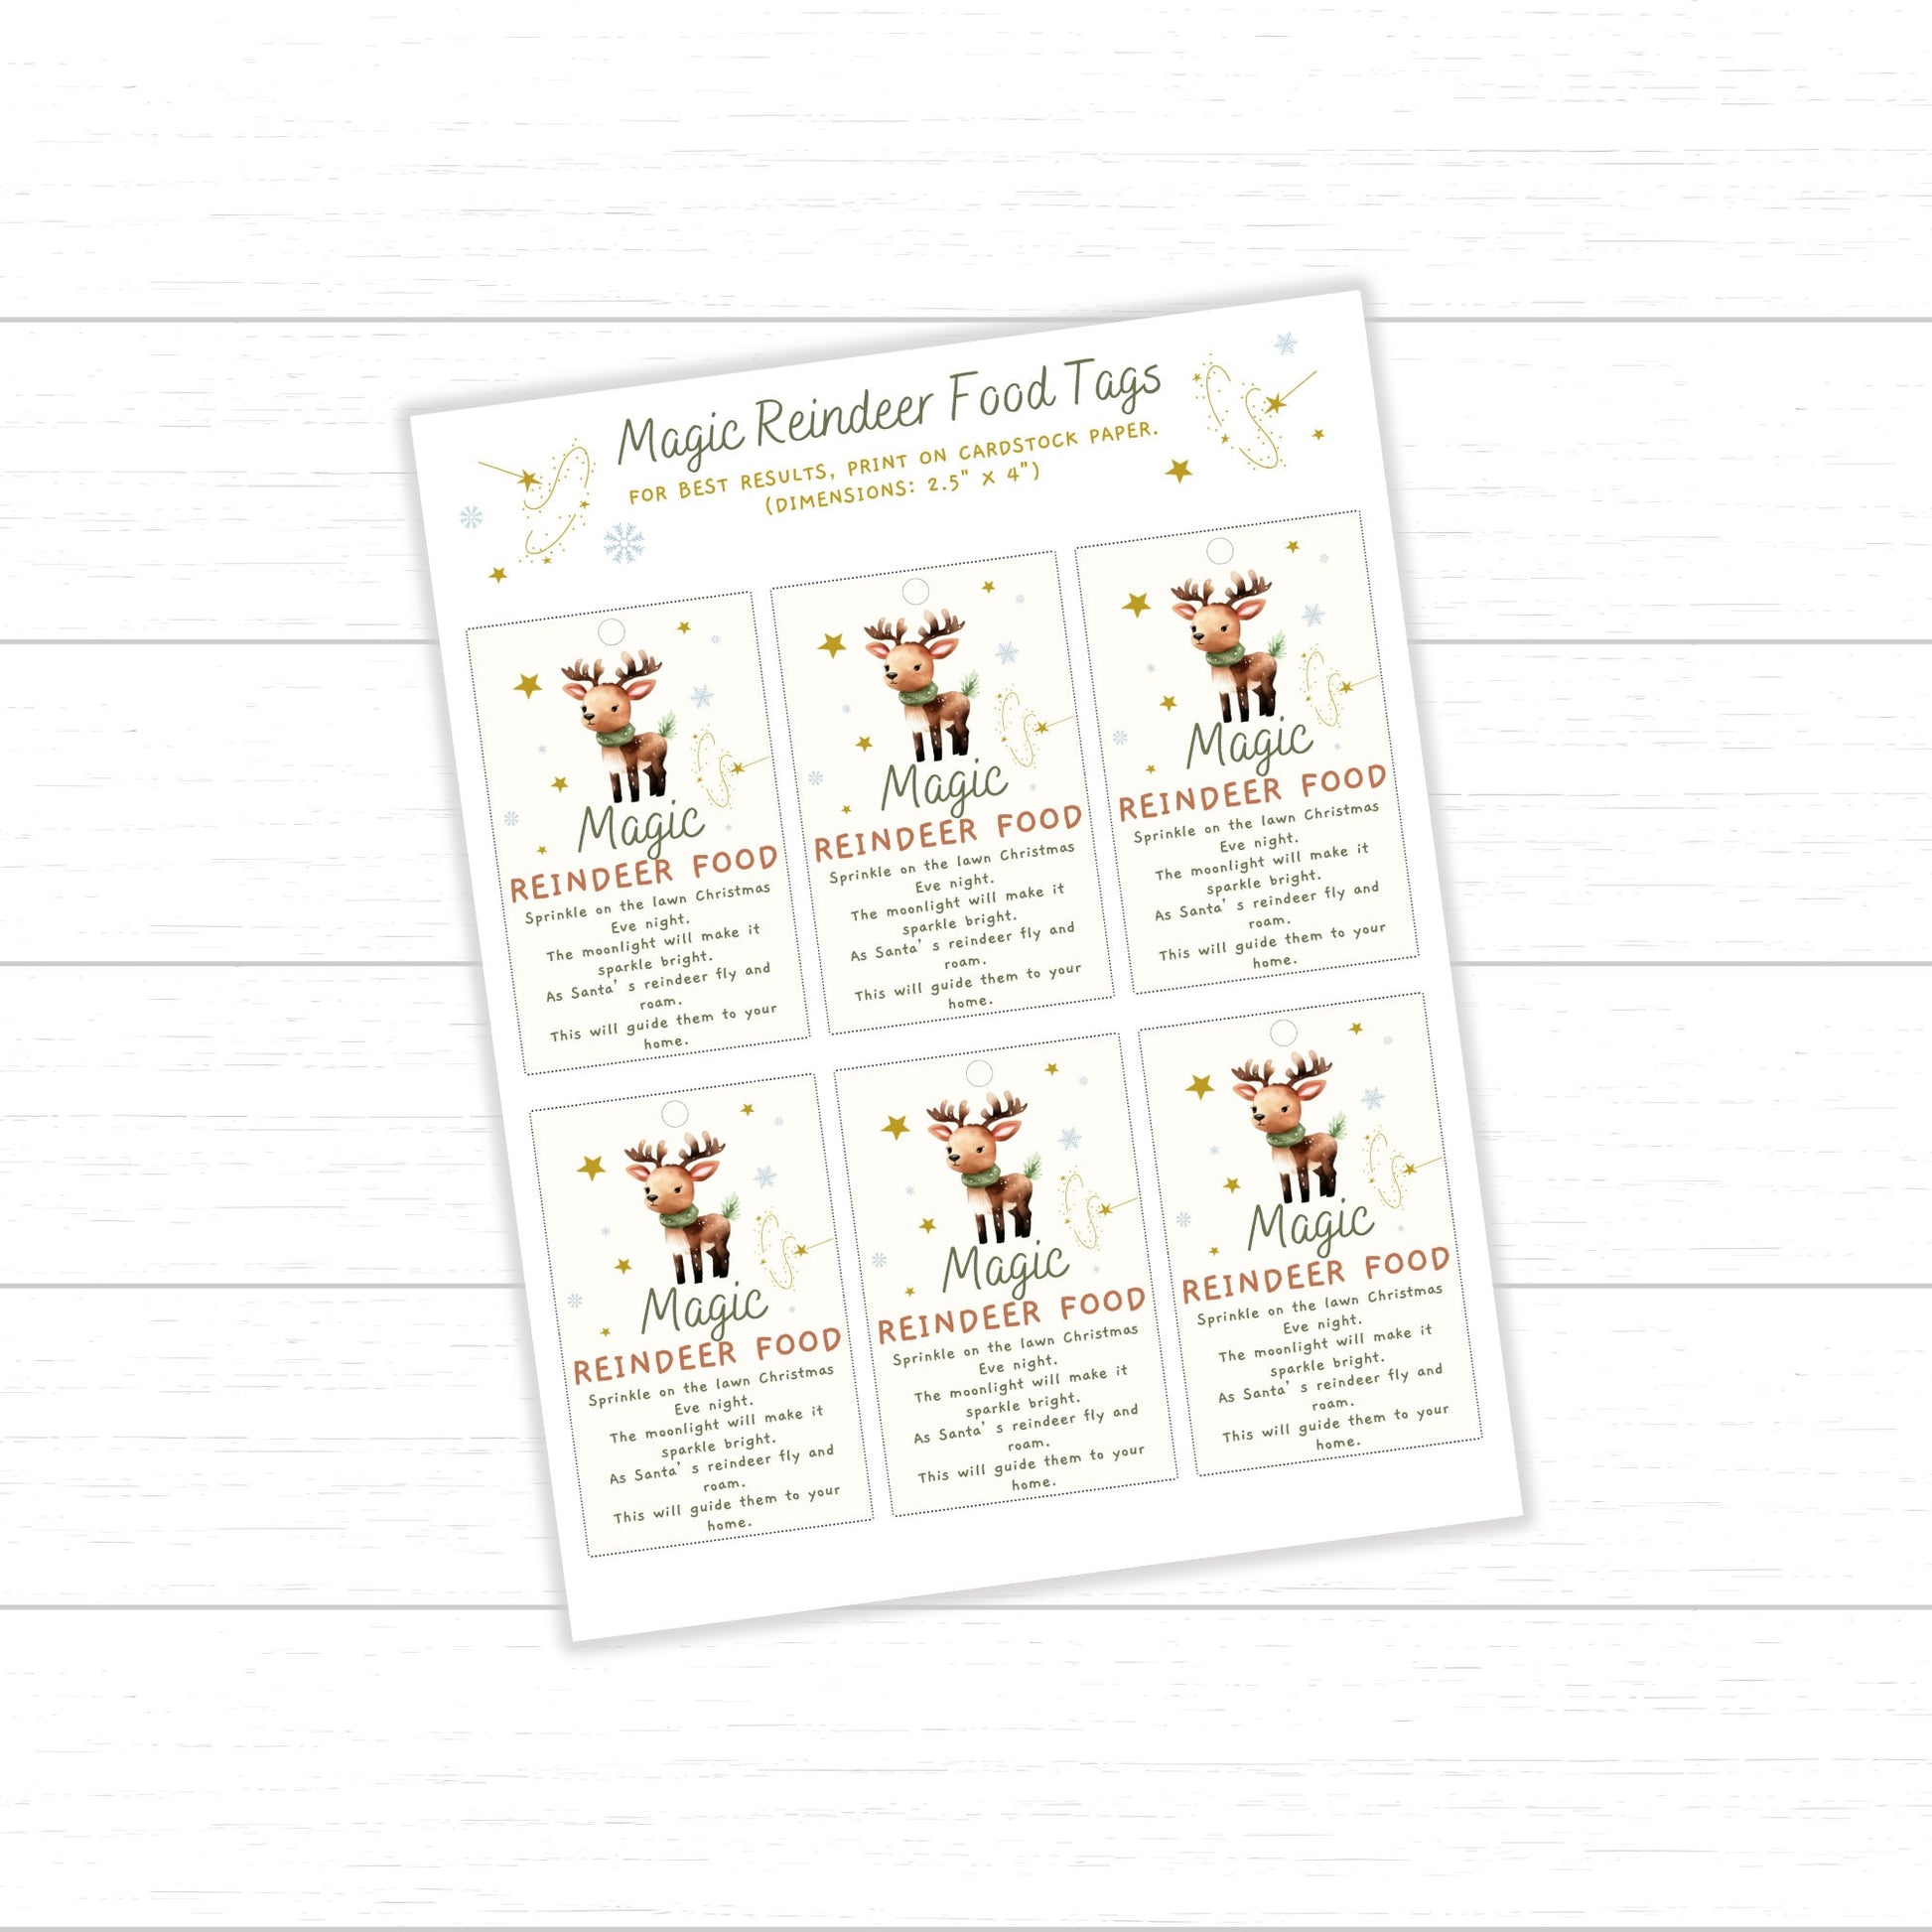 Reindeer Food Tags and Bag Toppers, Reindeer Food Recipe, Magic Reindeer Food Treat Tags and Bag Toppers, Magic Reindeer Food Bag Toppers